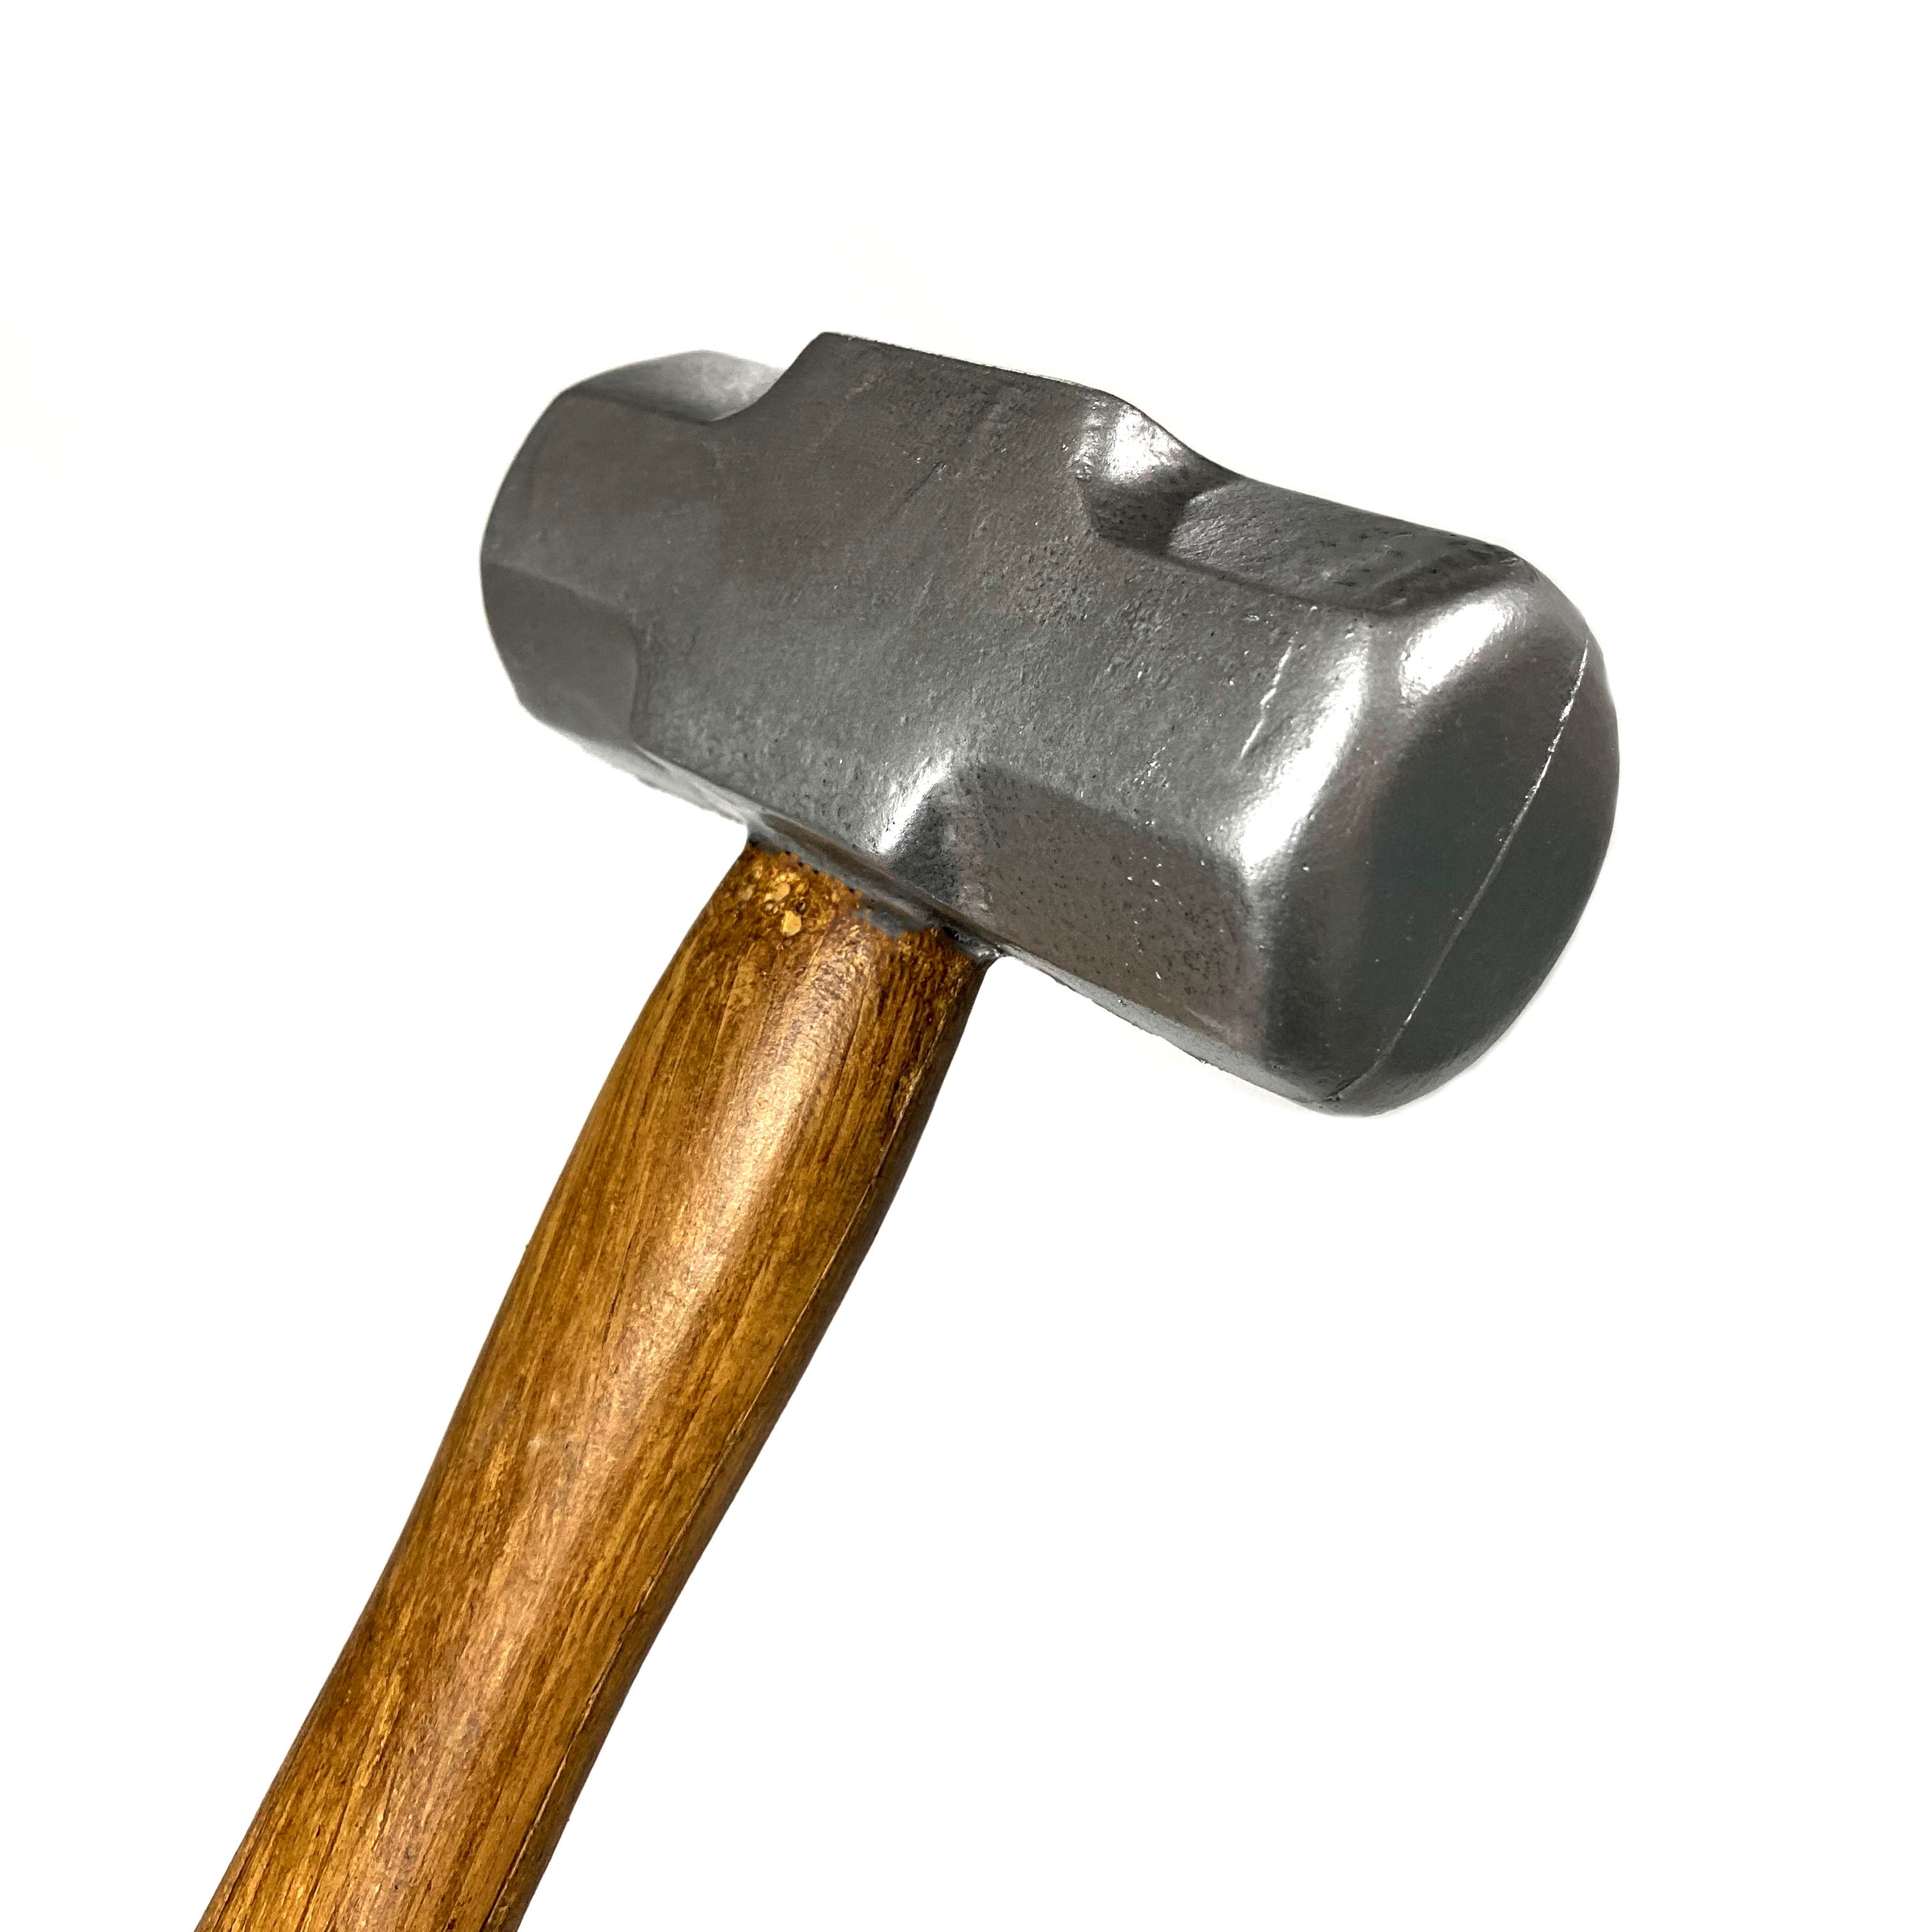 16 Inch Standard Size Foam Rubber Sledgehammer Prop - Silver